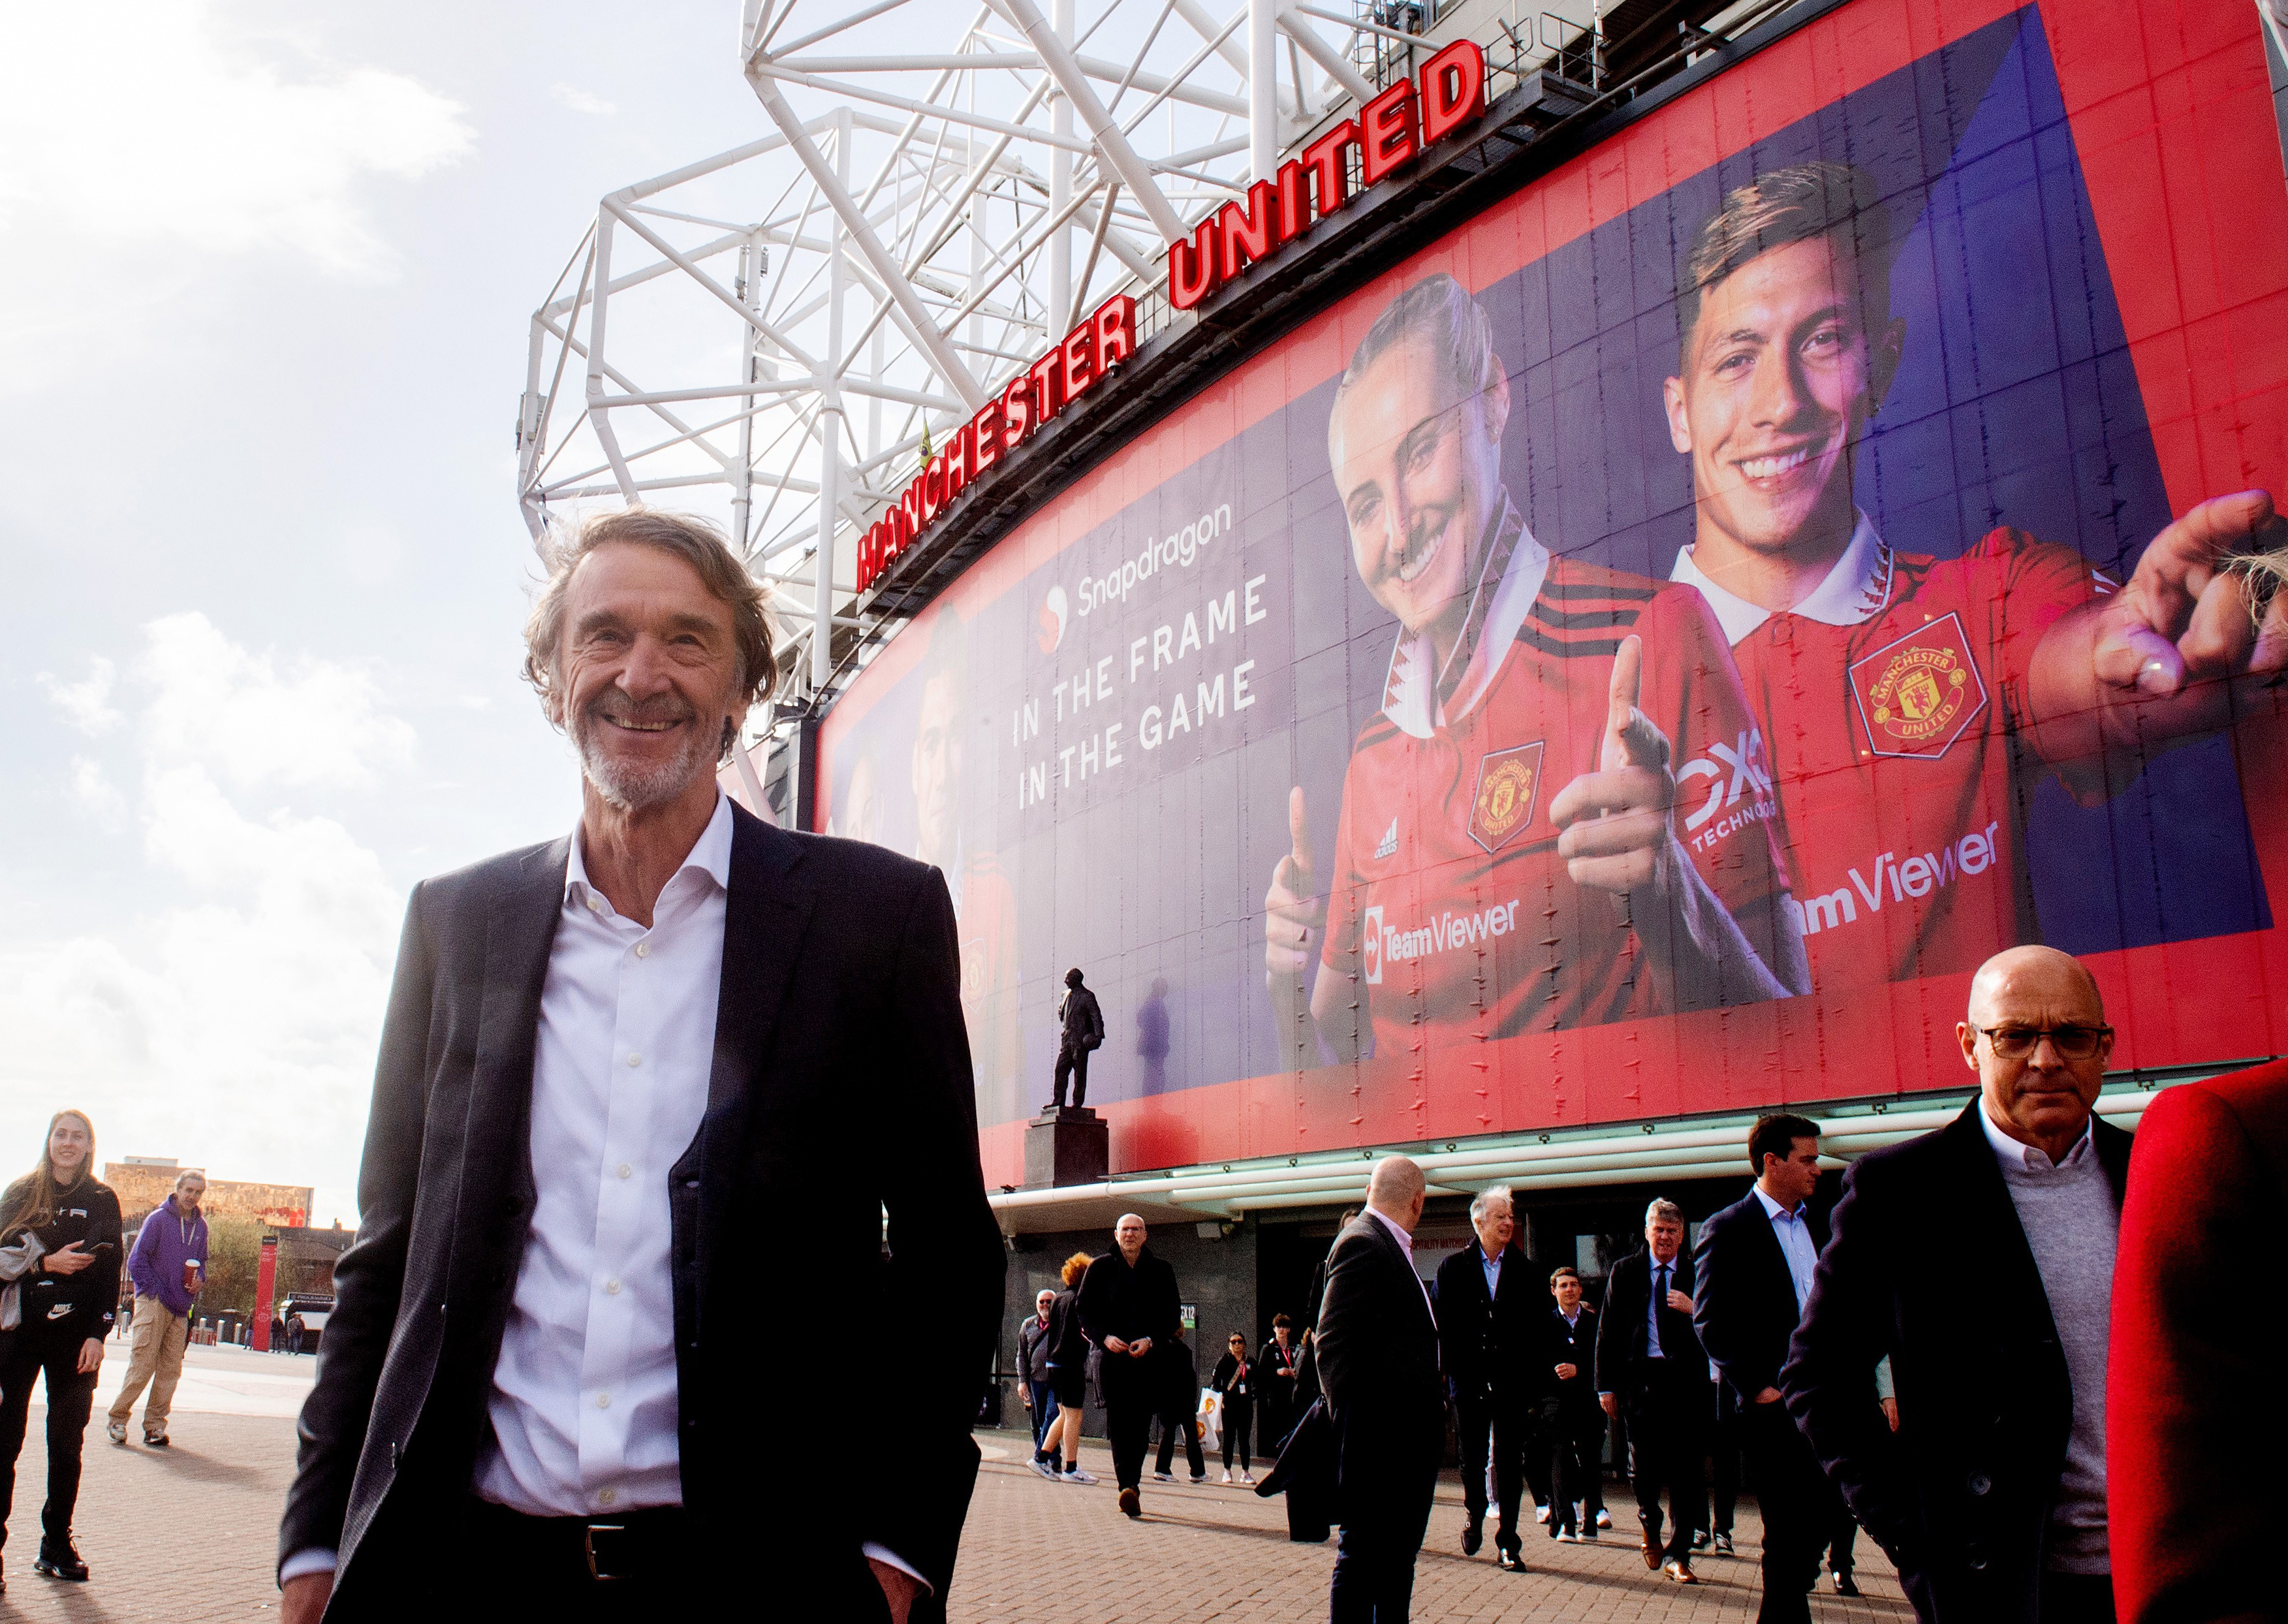 Sir Jim Ratcliffe möchte United wieder an die Spitze bringen, nachdem er eine Beteiligung an dem Verein erworben hat